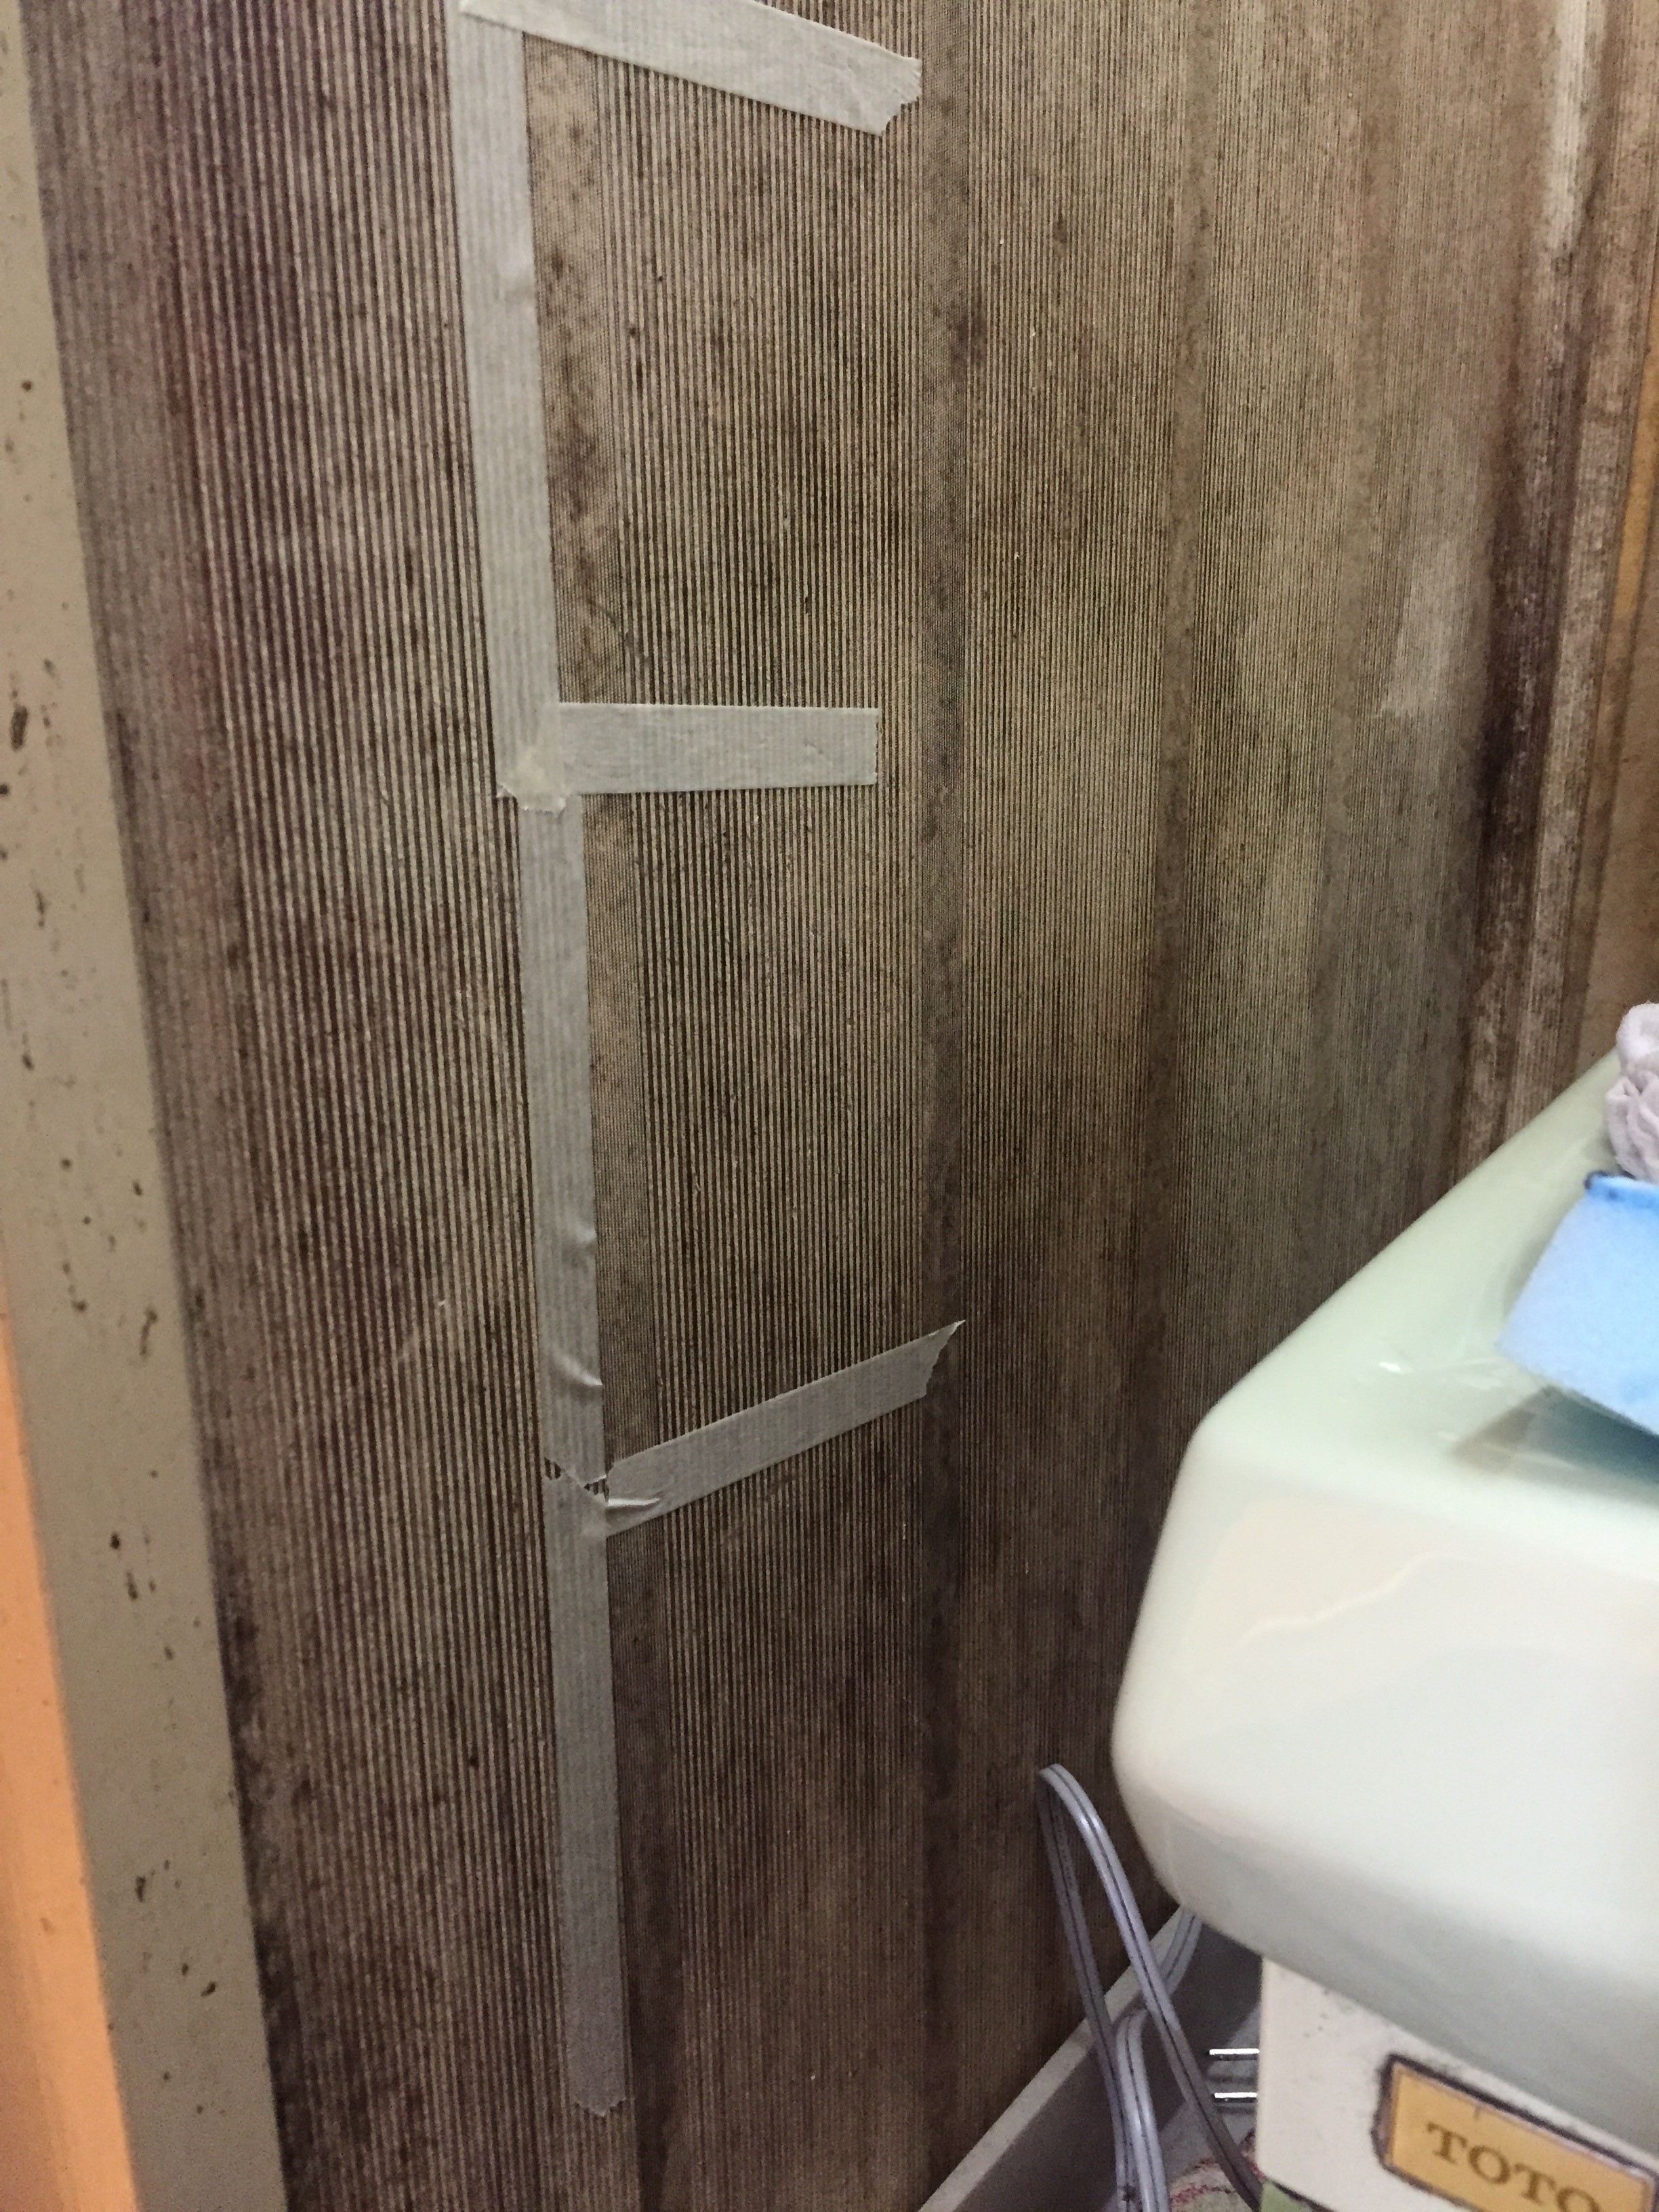 日本一掃除しがいのある汚い家を掃除してきた お風呂のカビ編 くらしの丁度品店 木村石鹸